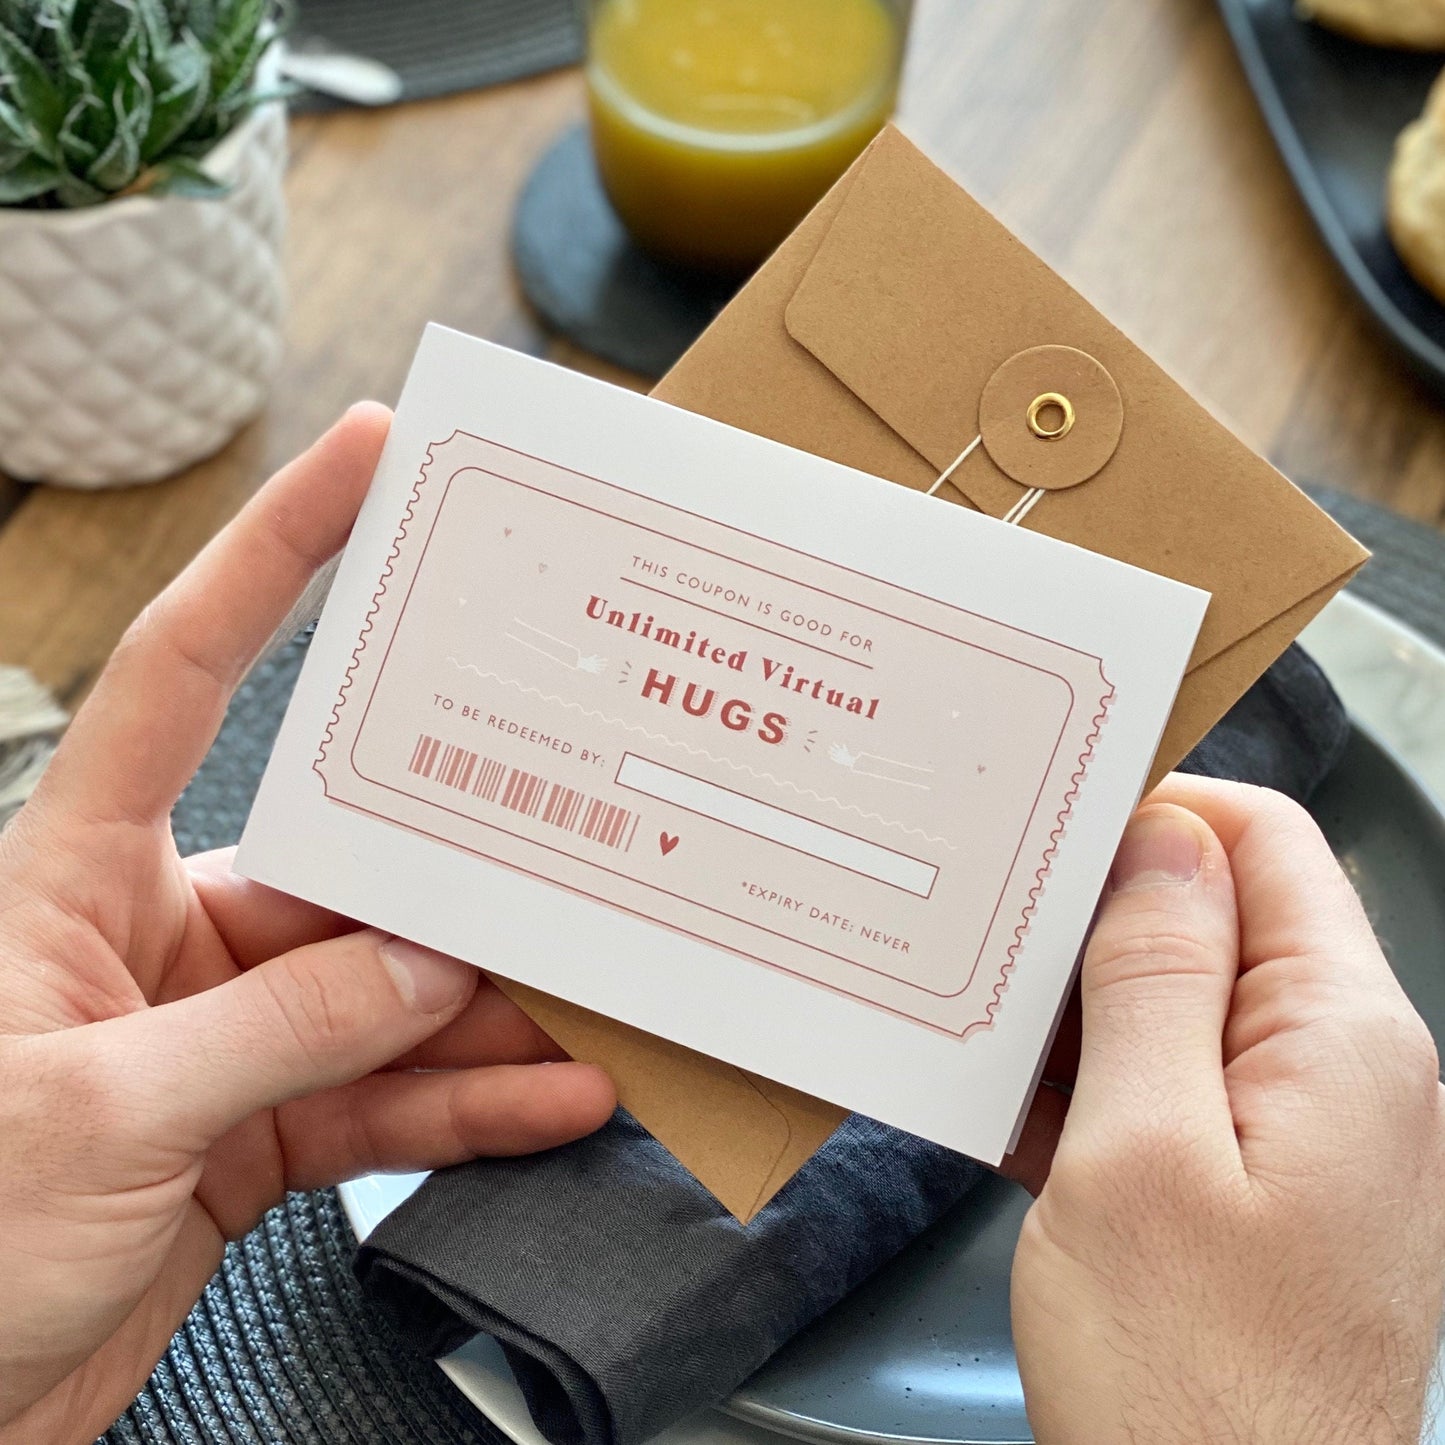 Virtual Hug Coupon Card